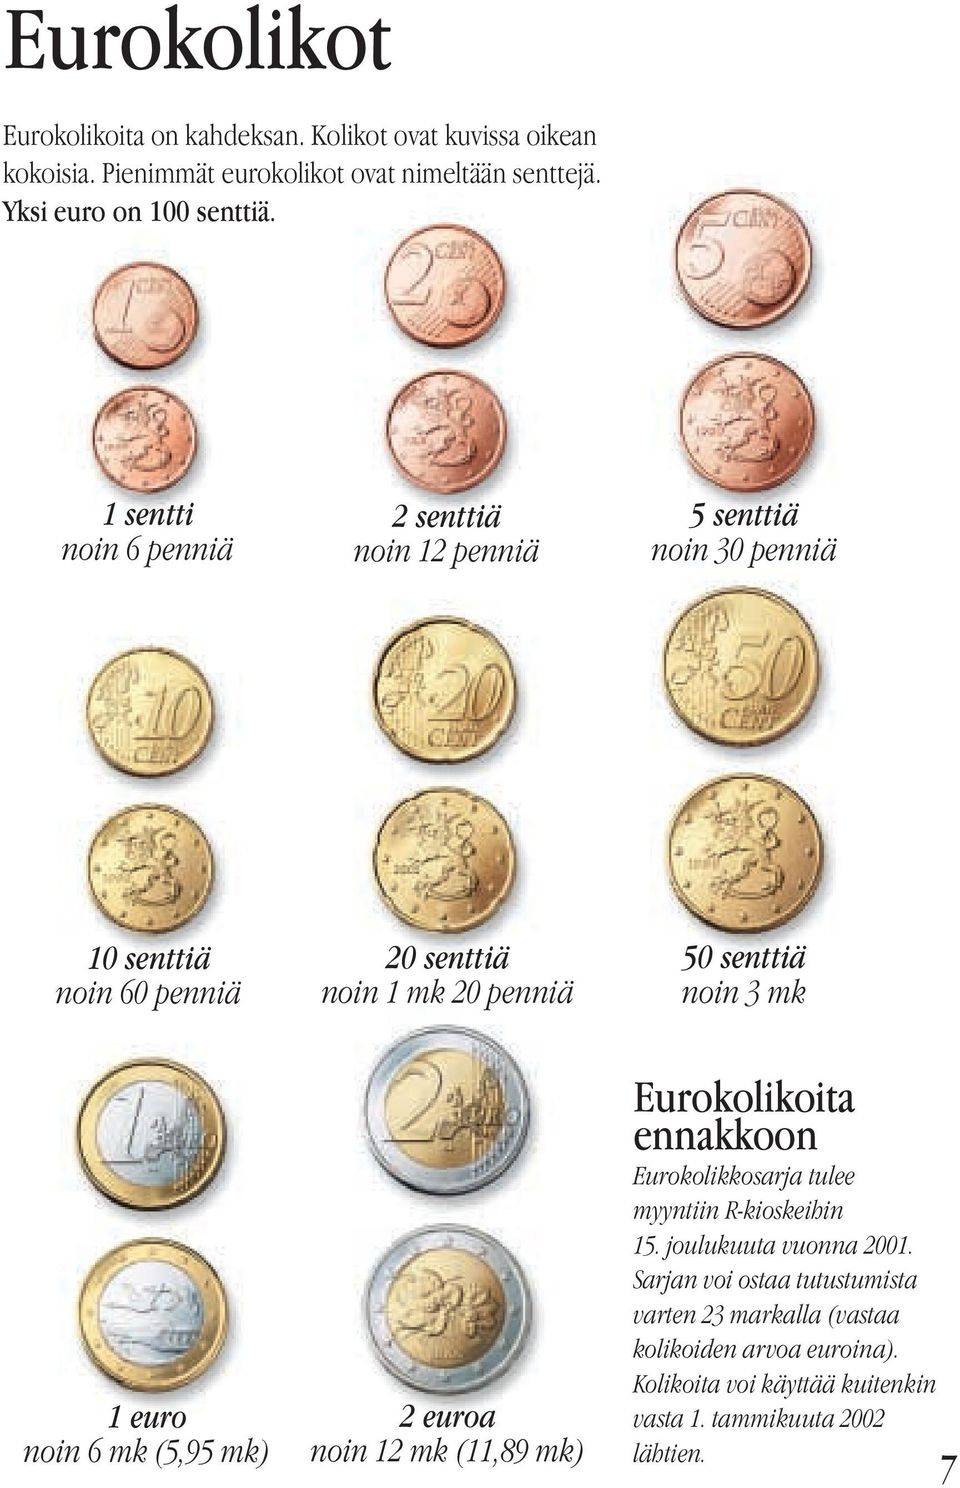 1 euro noin 6 mk (5,95 mk) 2 euroa noin 12 mk (11,89 mk) Eurokolikoita ennakkoon Eurokolikkosarja tulee myyntiin R-kioskeihin 15.